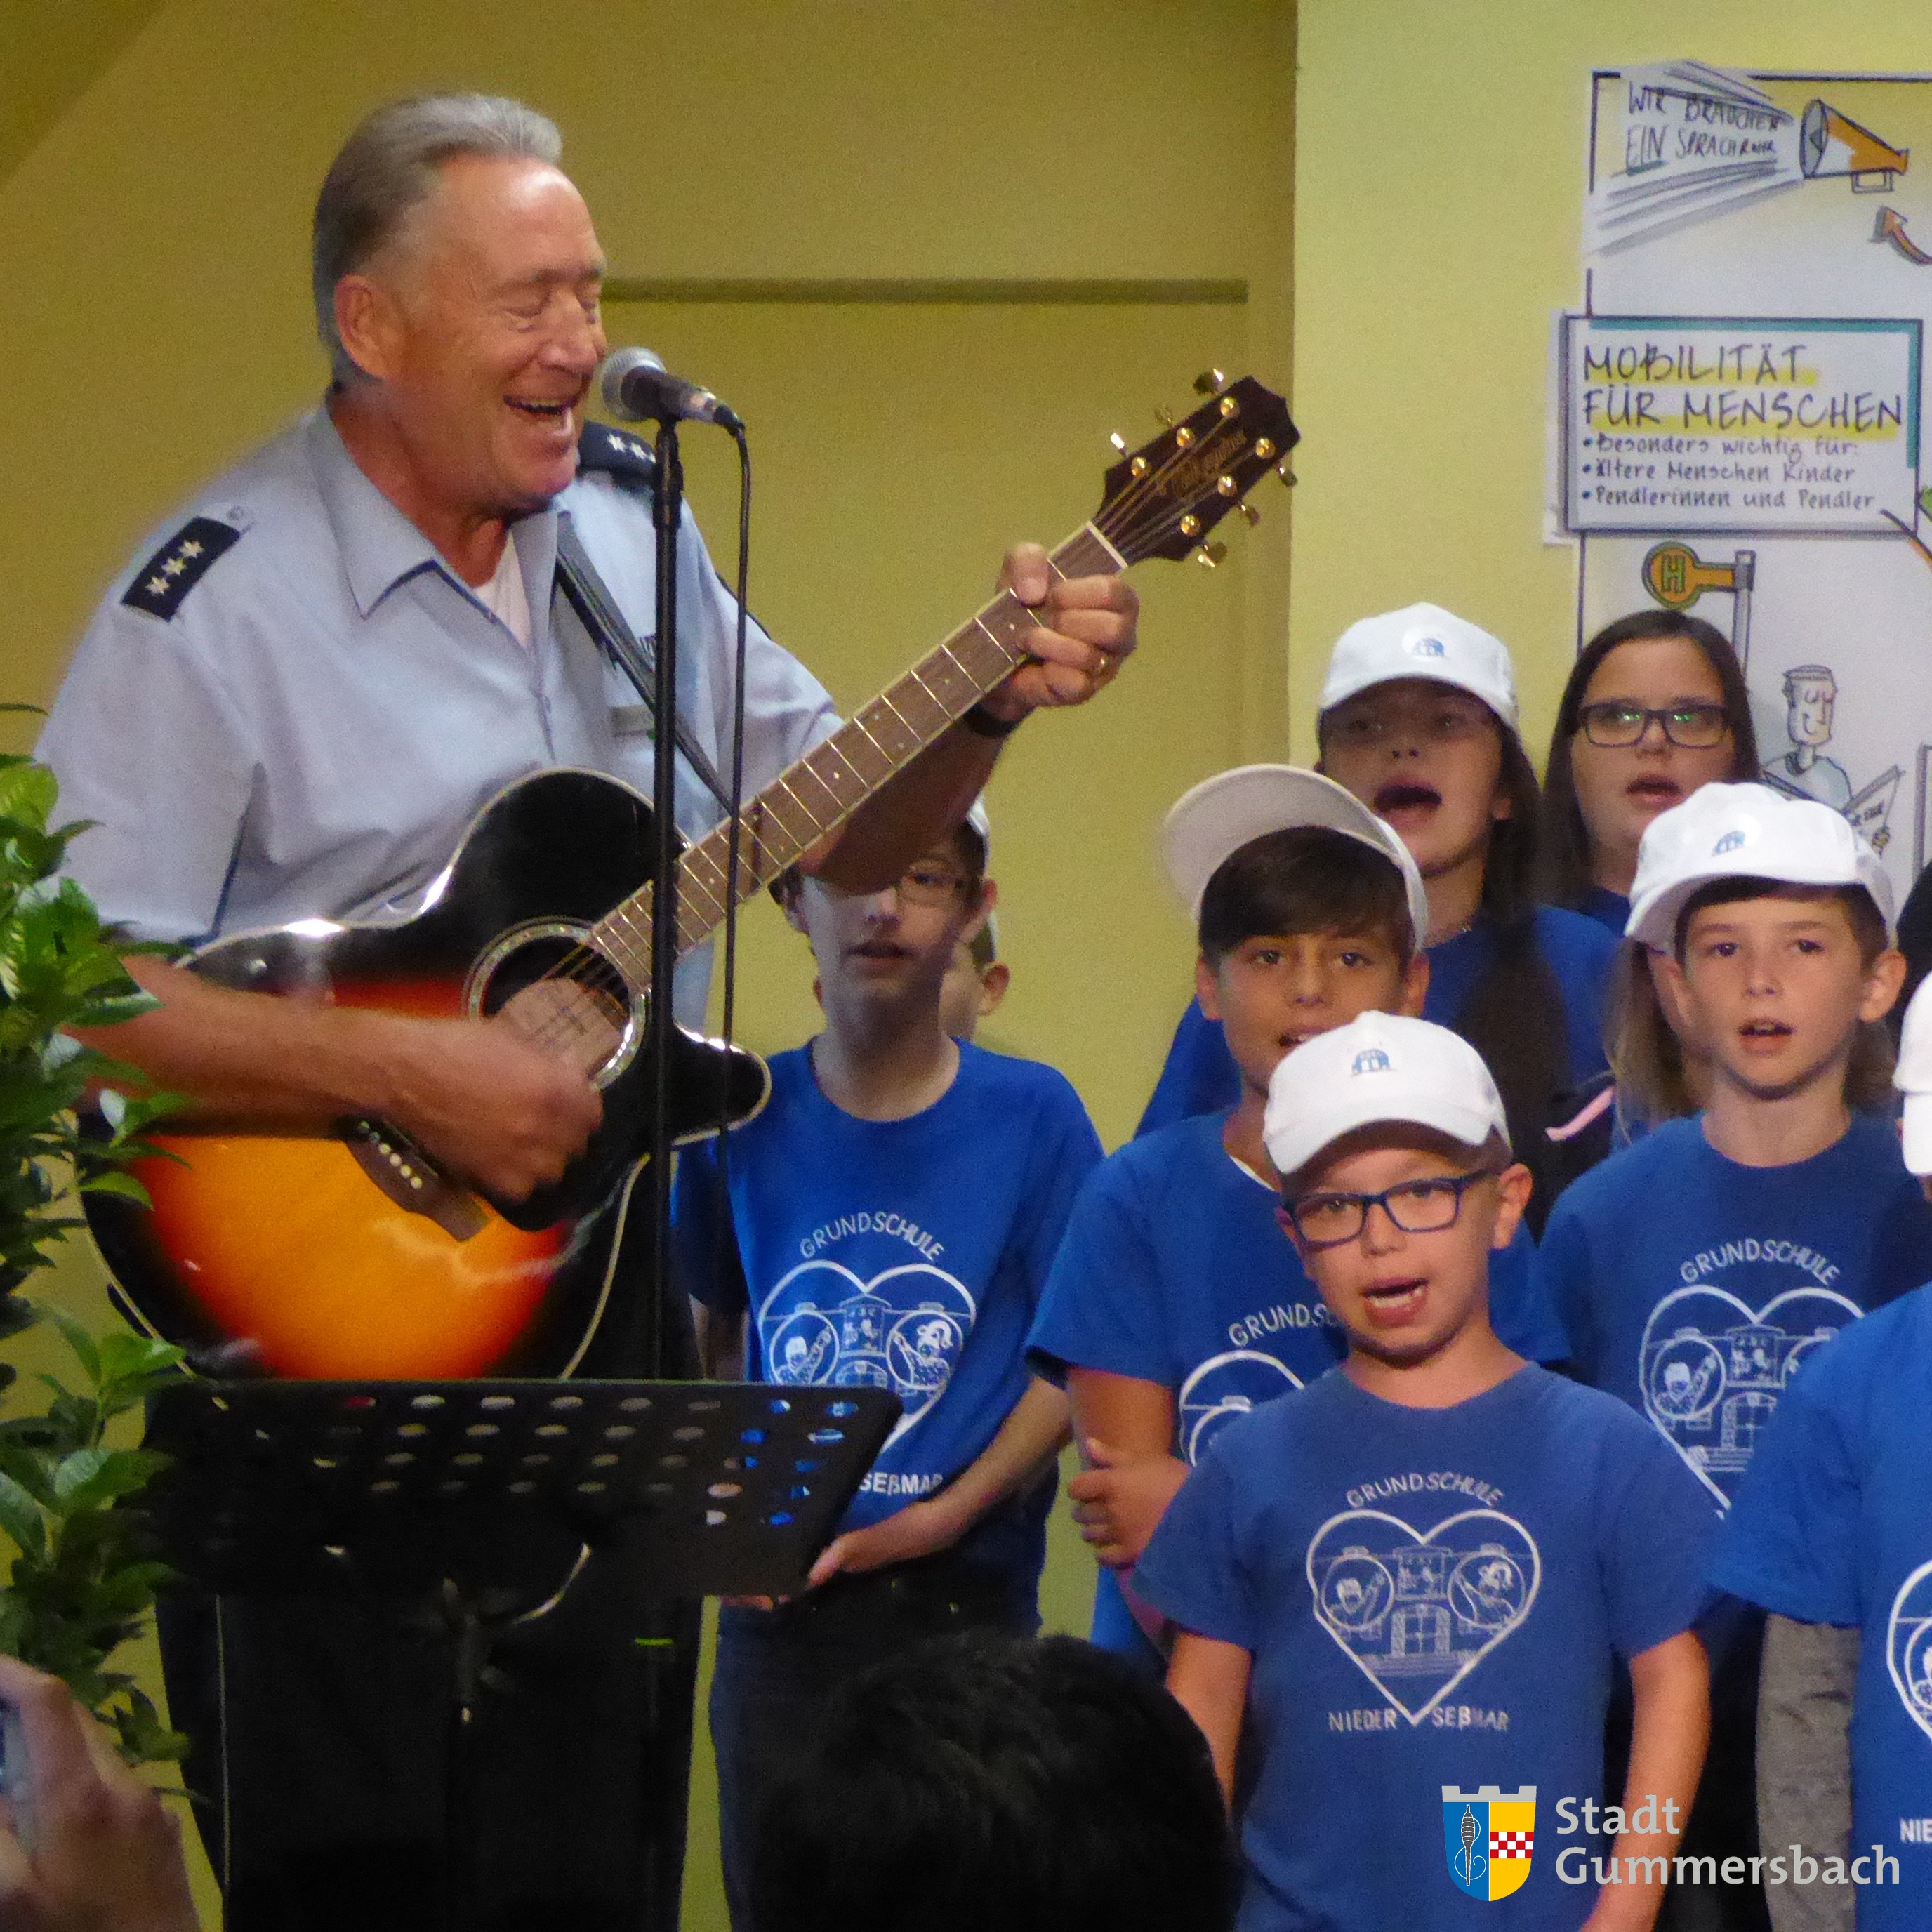 Das Walking-Bus-Lied sangen die Kinder der GGS Niederseßmar mit Hartmut Dirlenbach zur Begrüßung des Ministers.